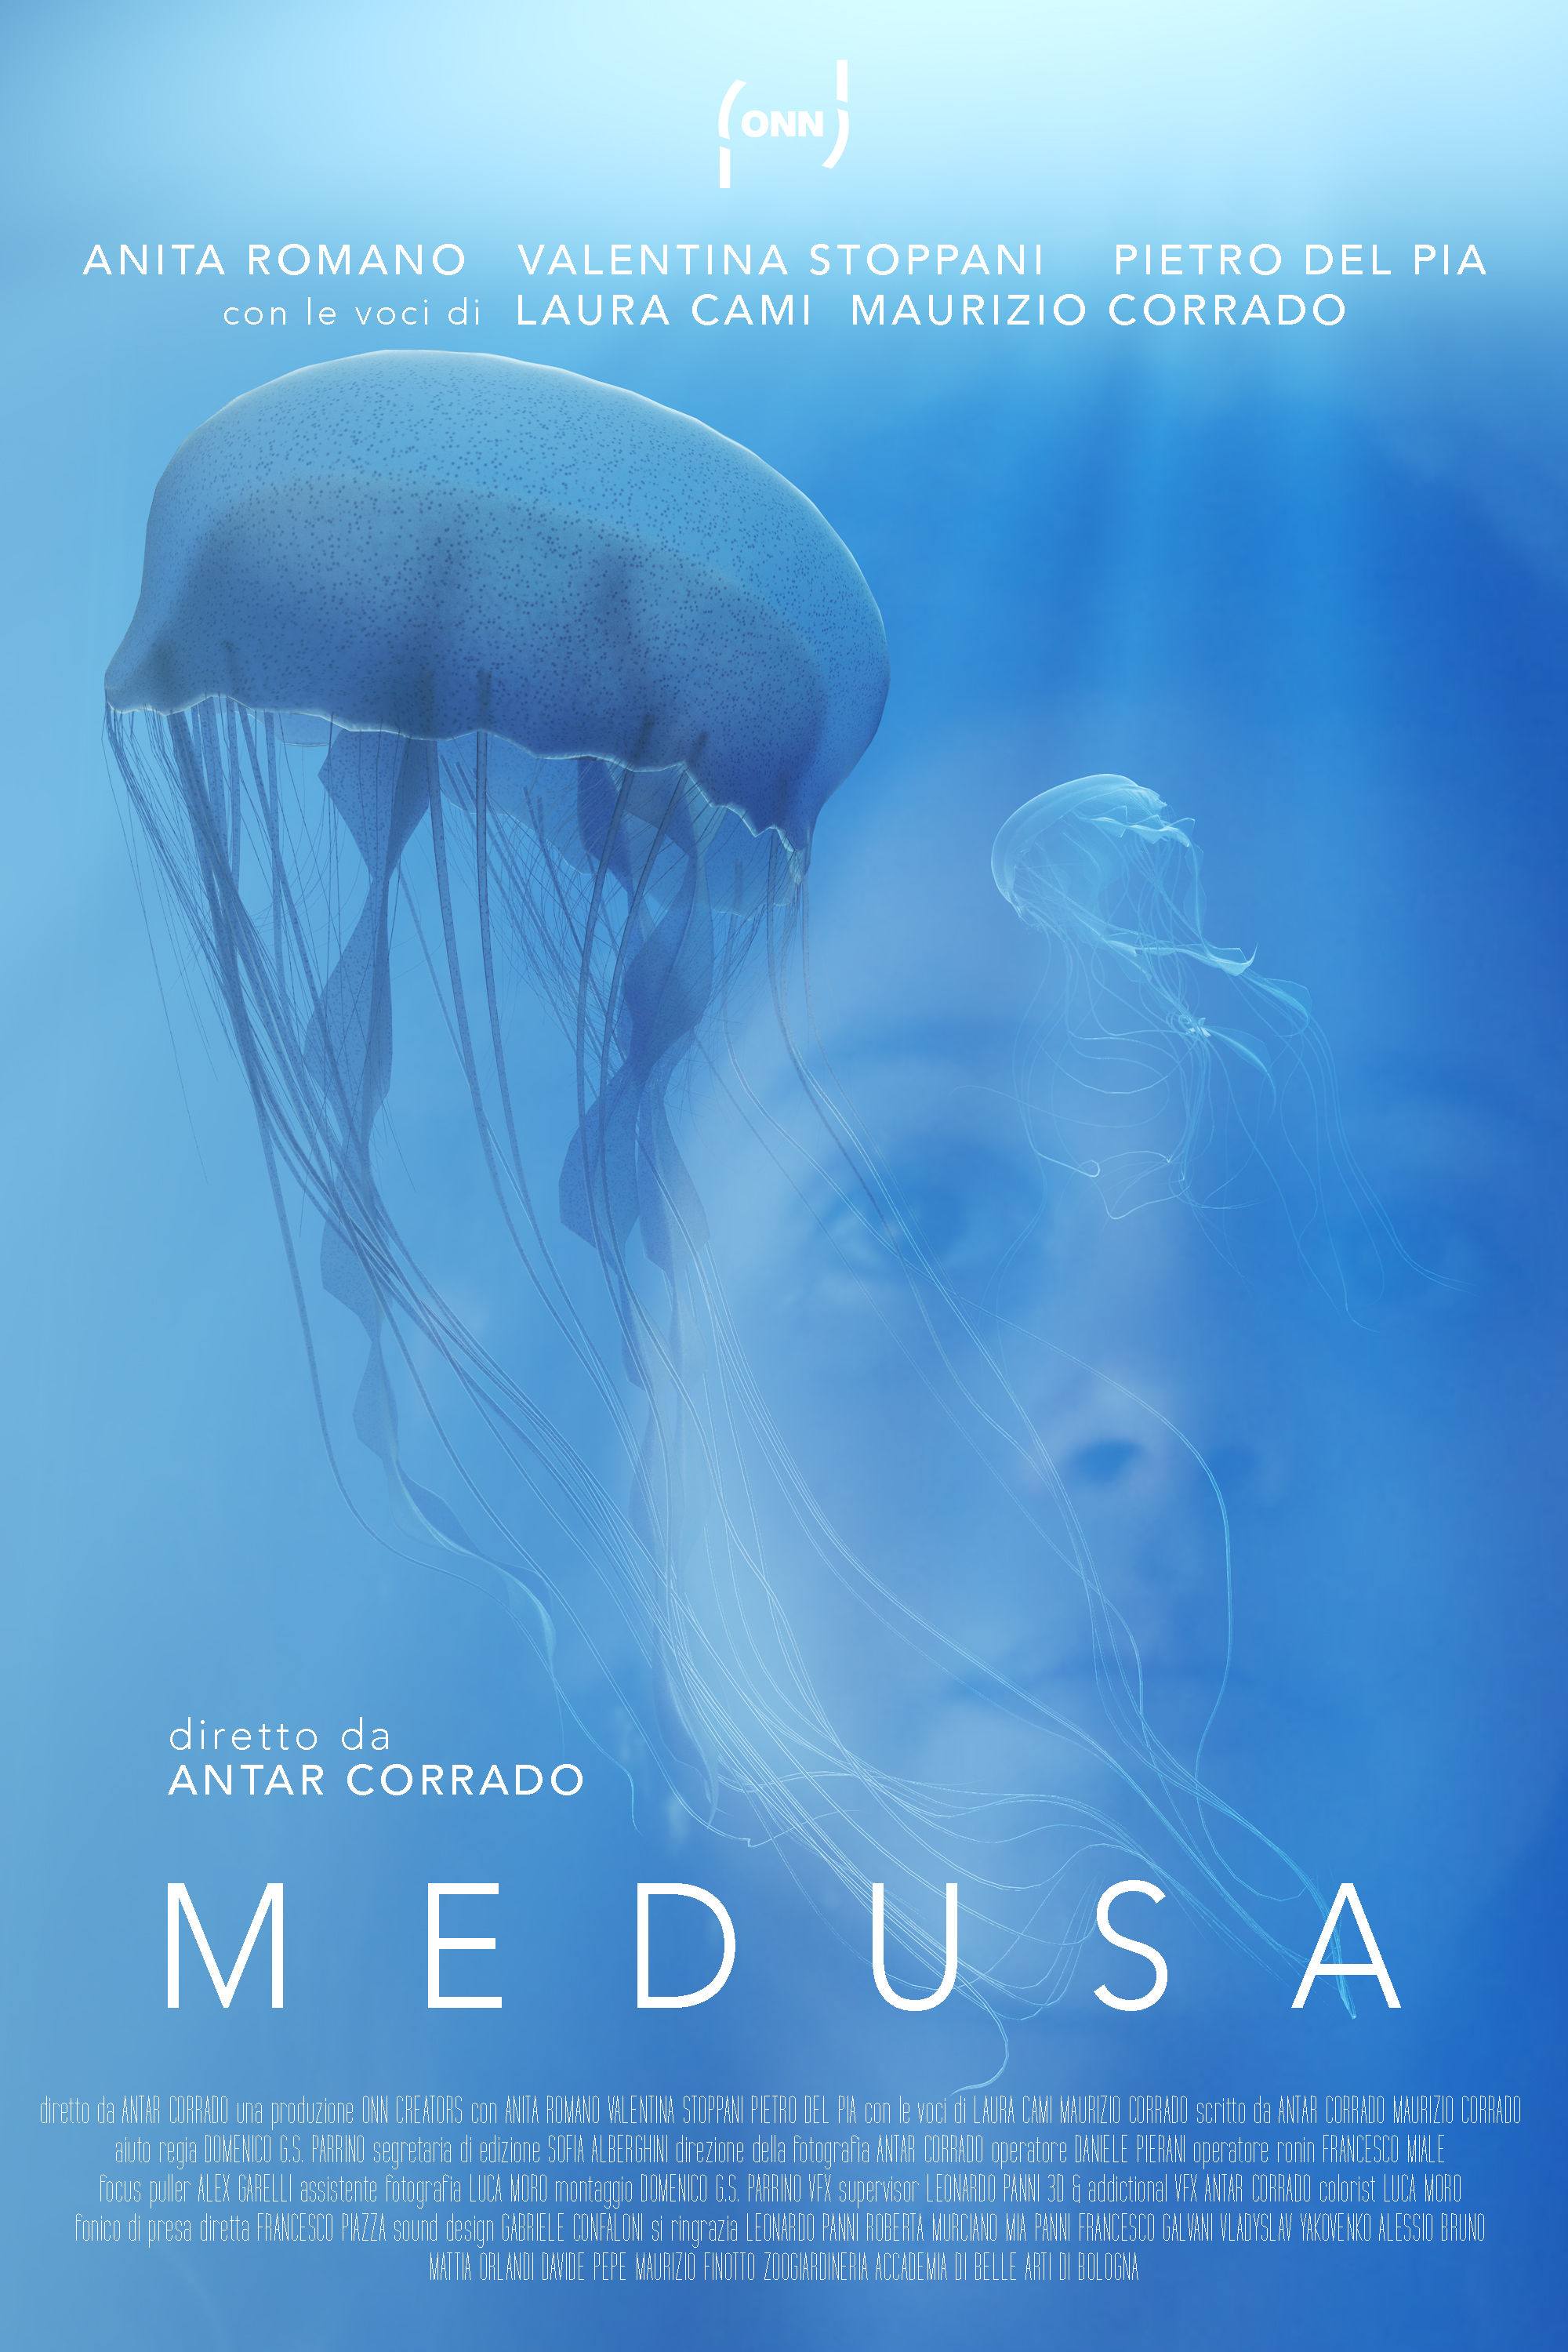 Medusa (2020)